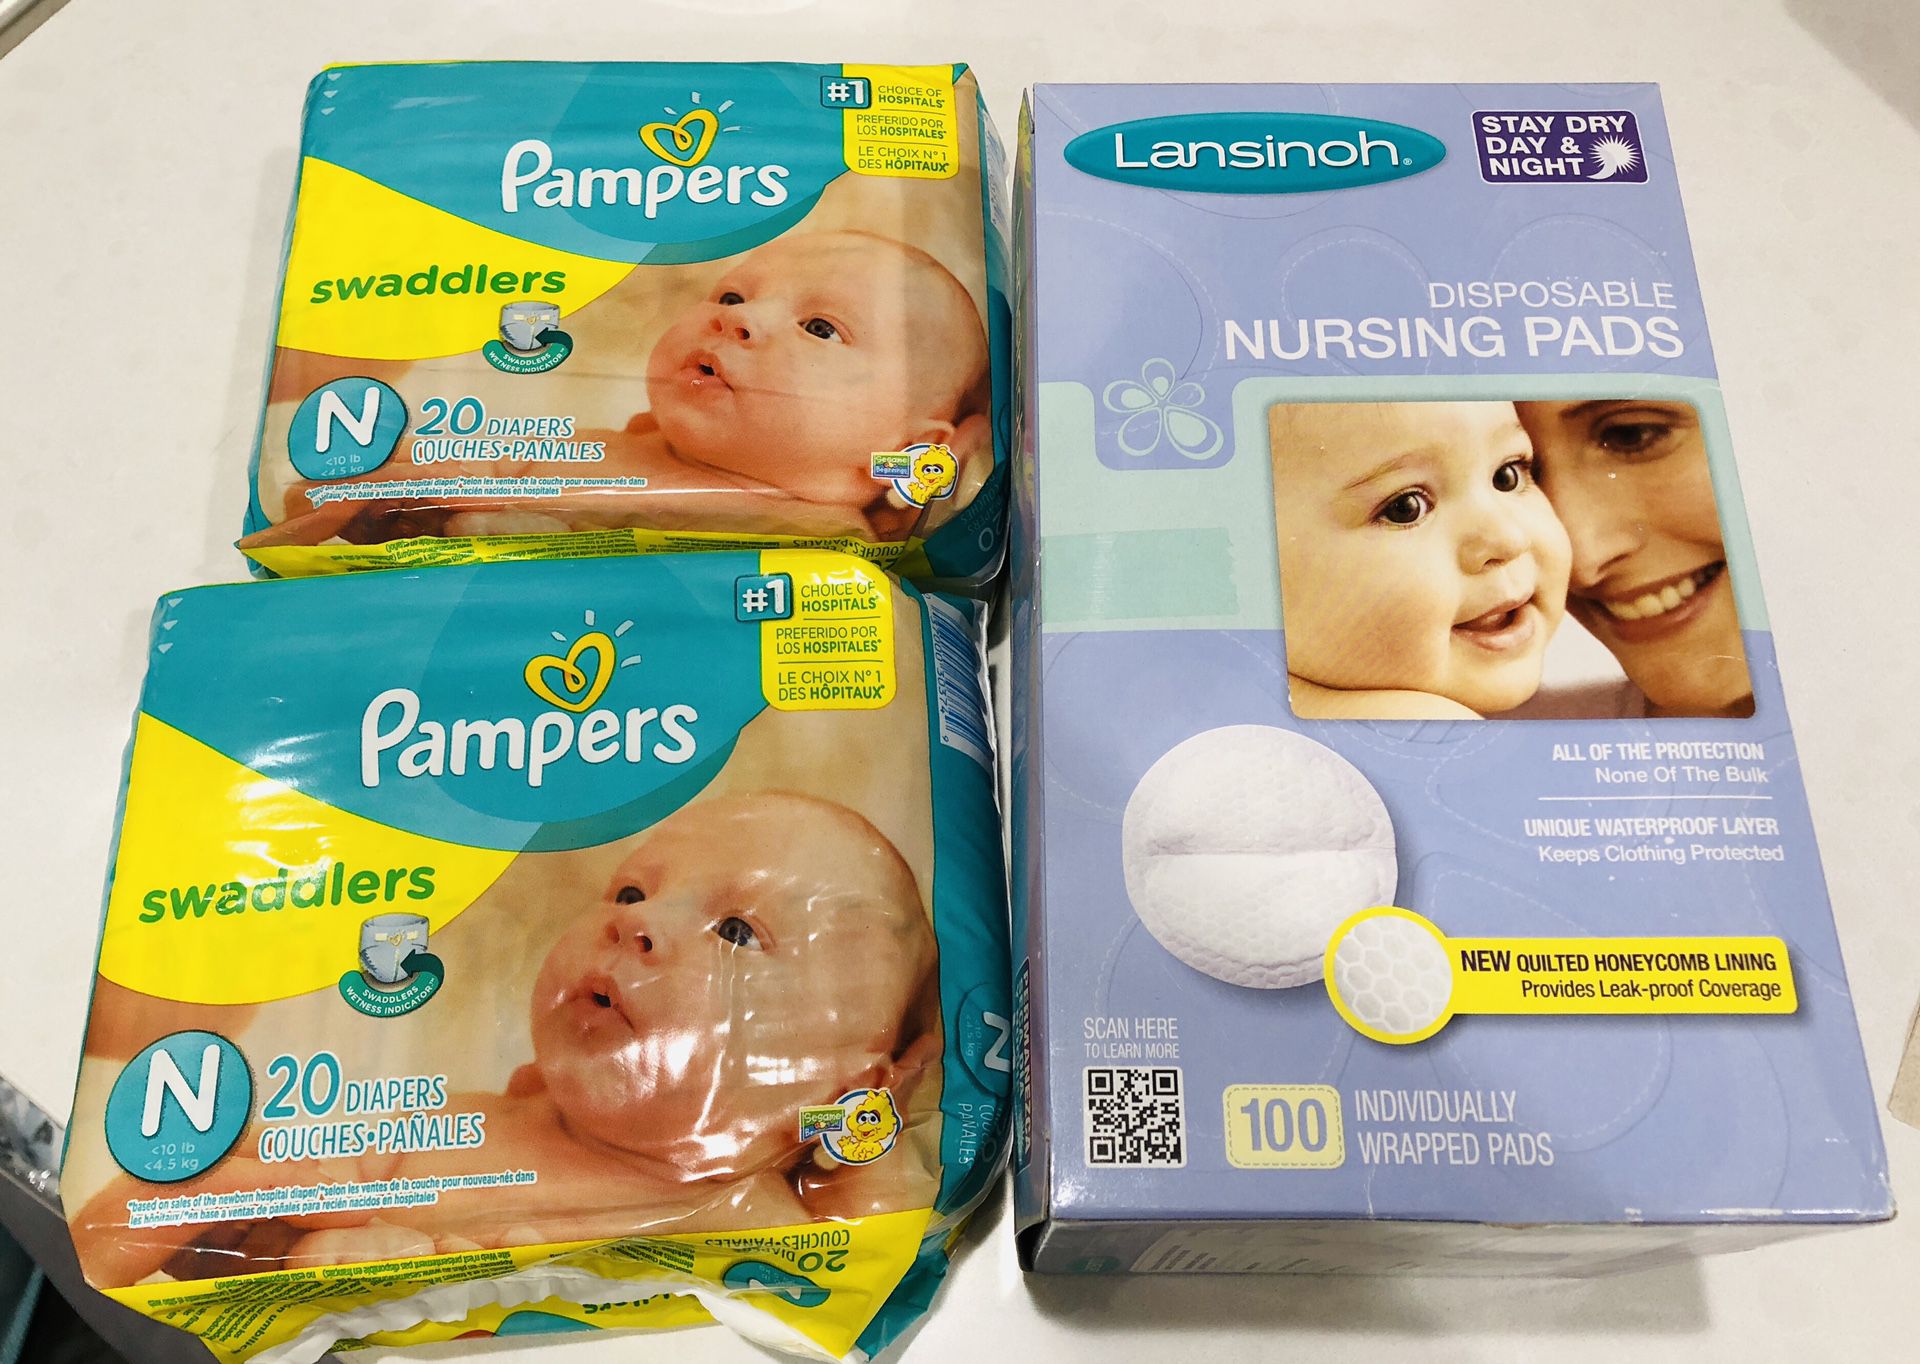 Pampers-newborn swaddlers & Lansinoh nursing pads-100